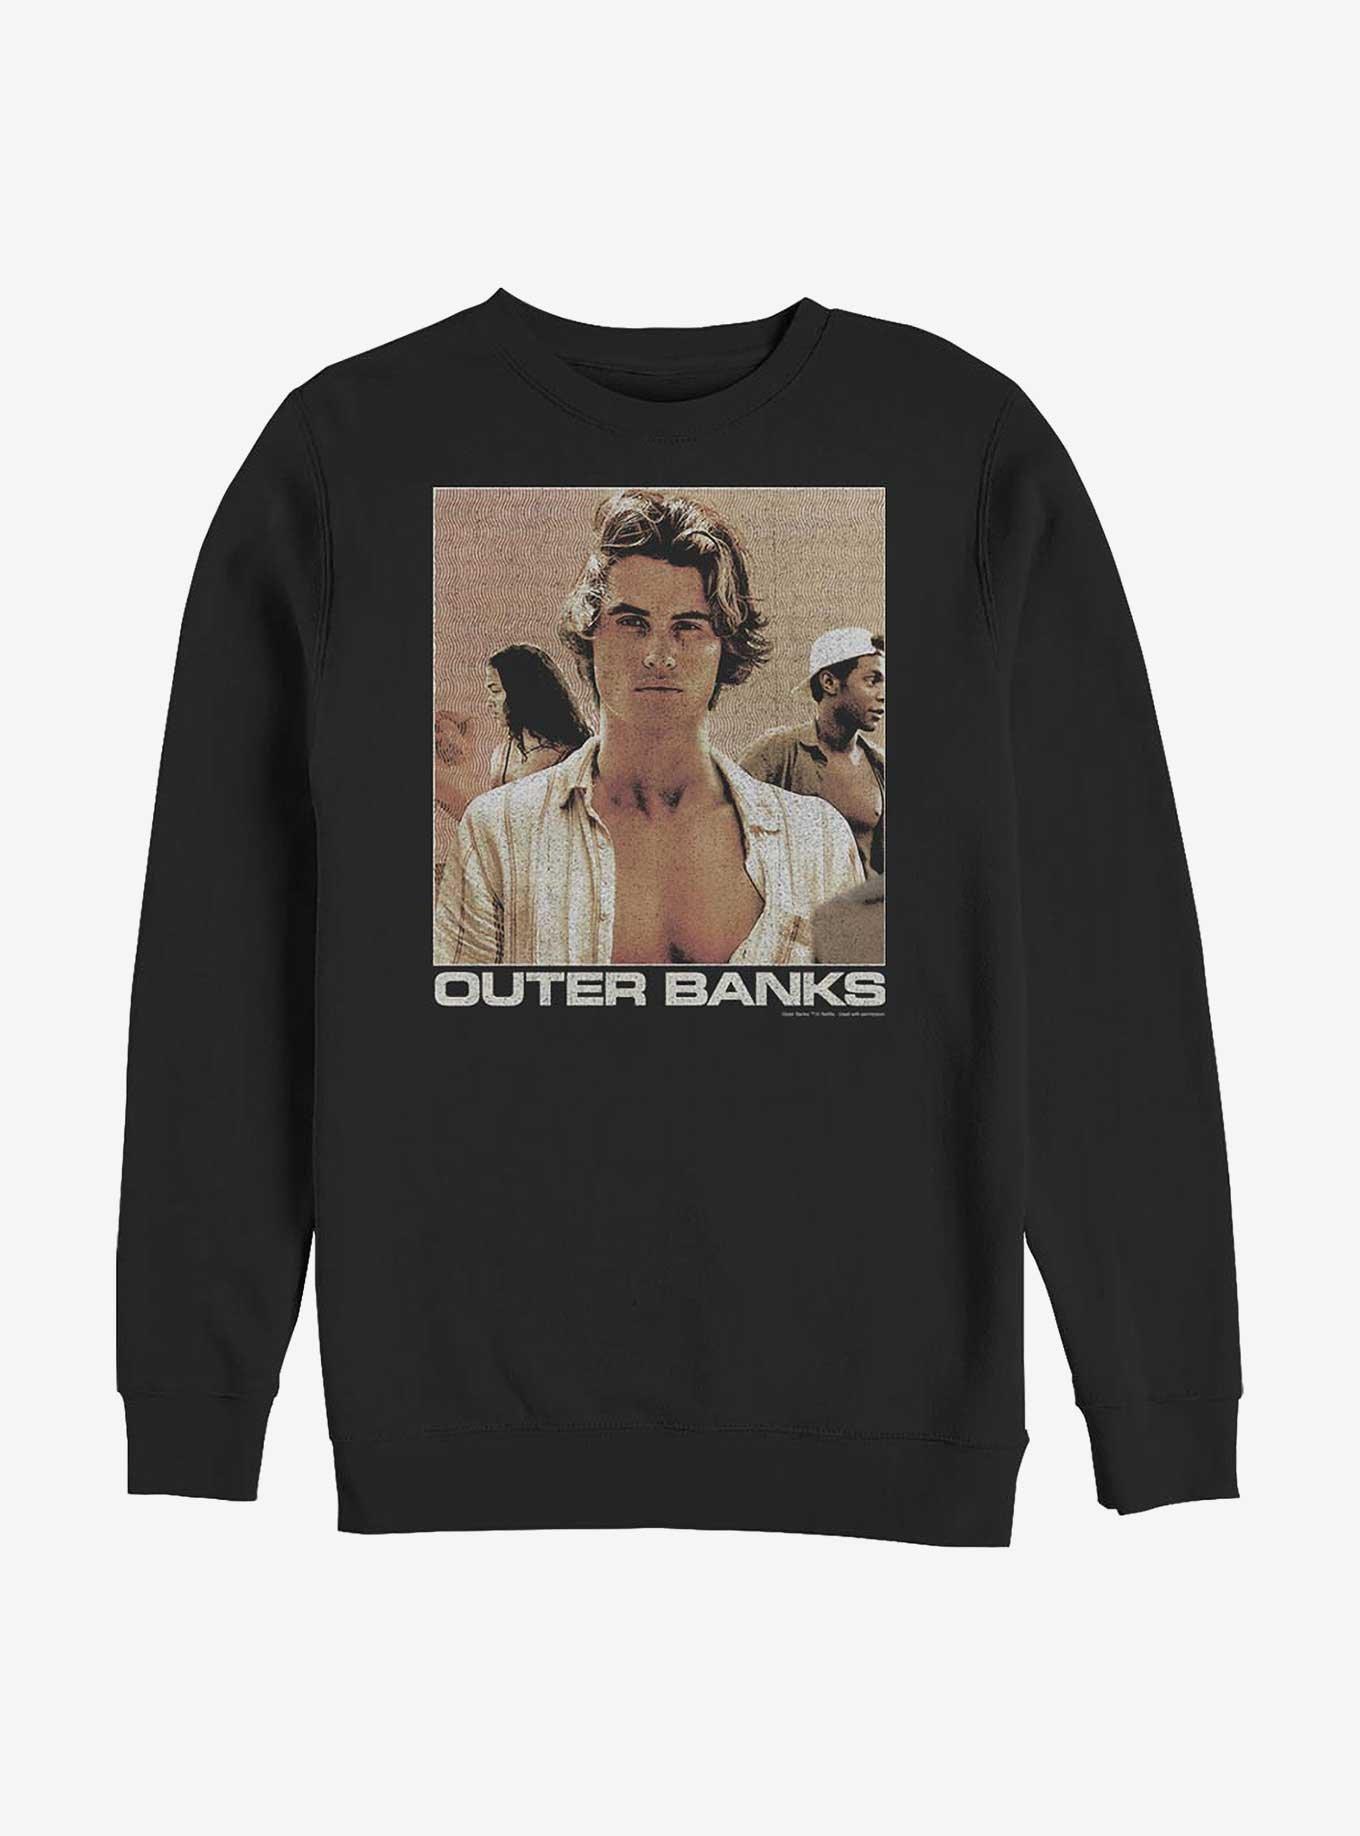 Outer Banks Waves Poster Sweatshirt, BLACK, hi-res